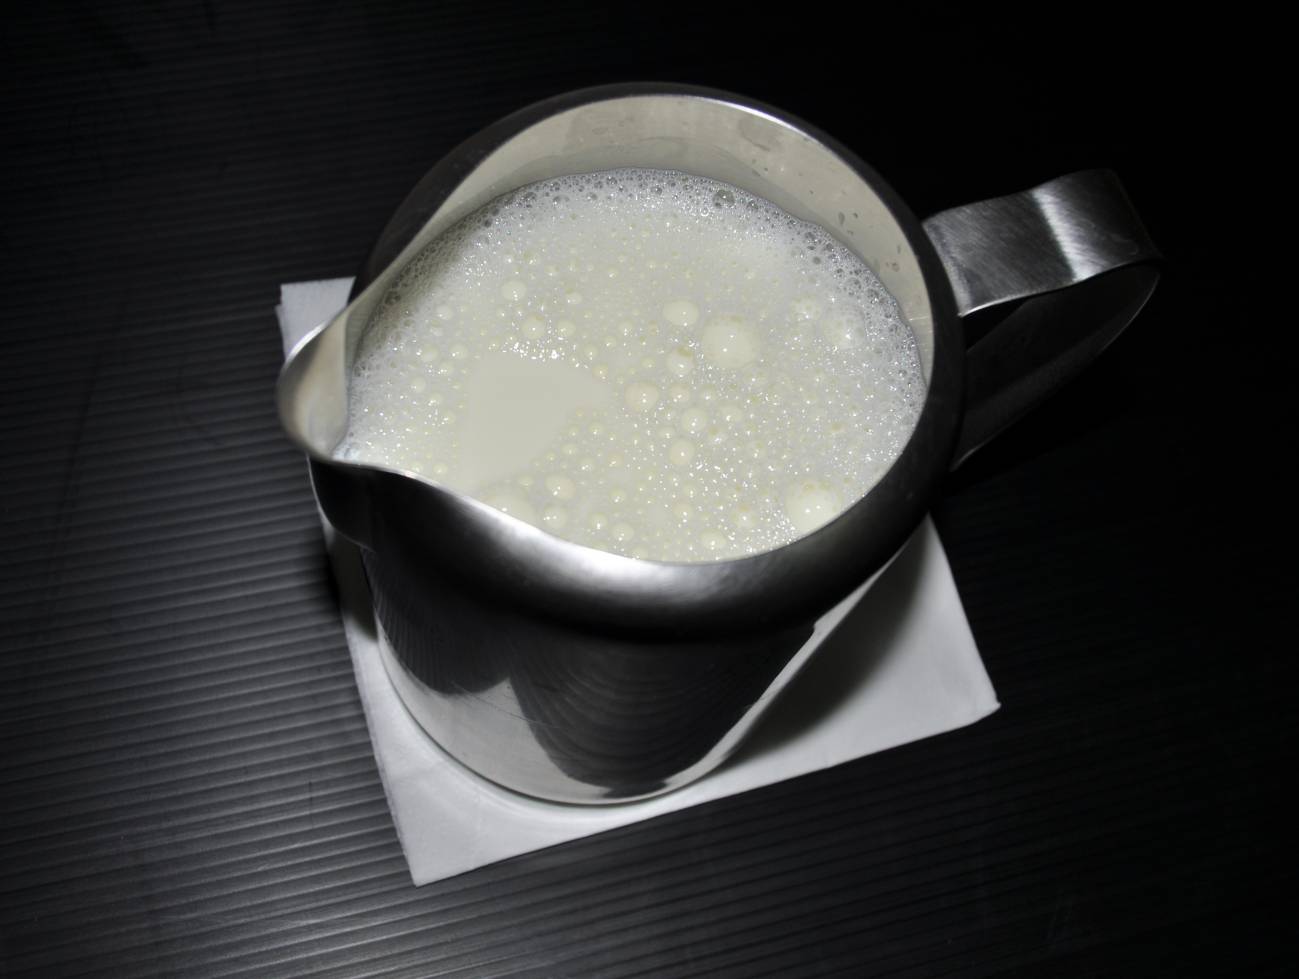 Un estudio recomienda manipular mejor la leche en los restaurantes